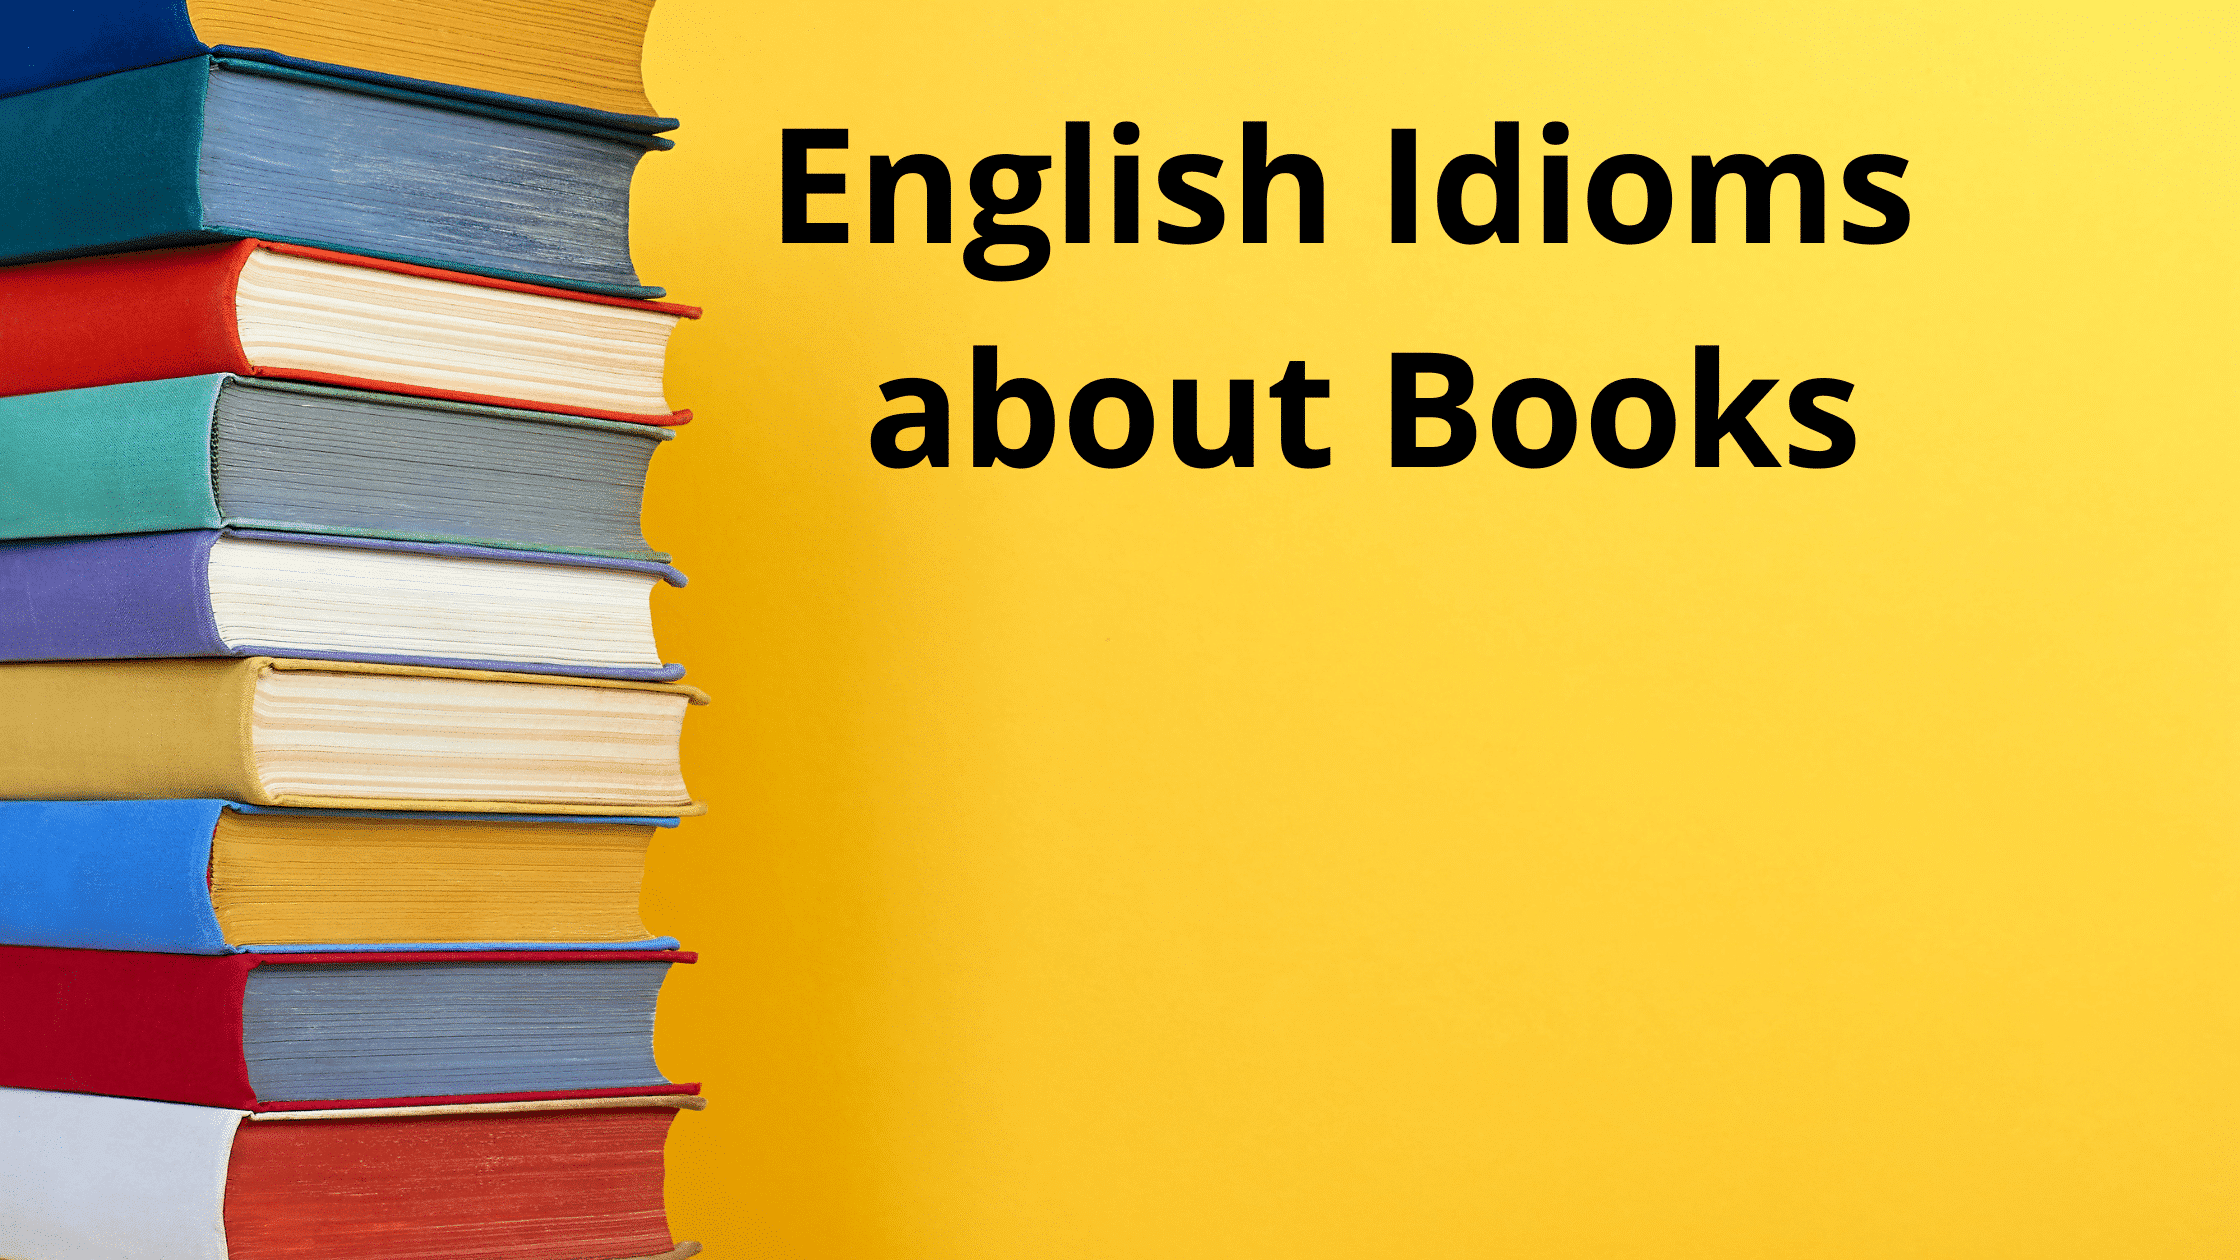 BOOKS IN ENGLISH